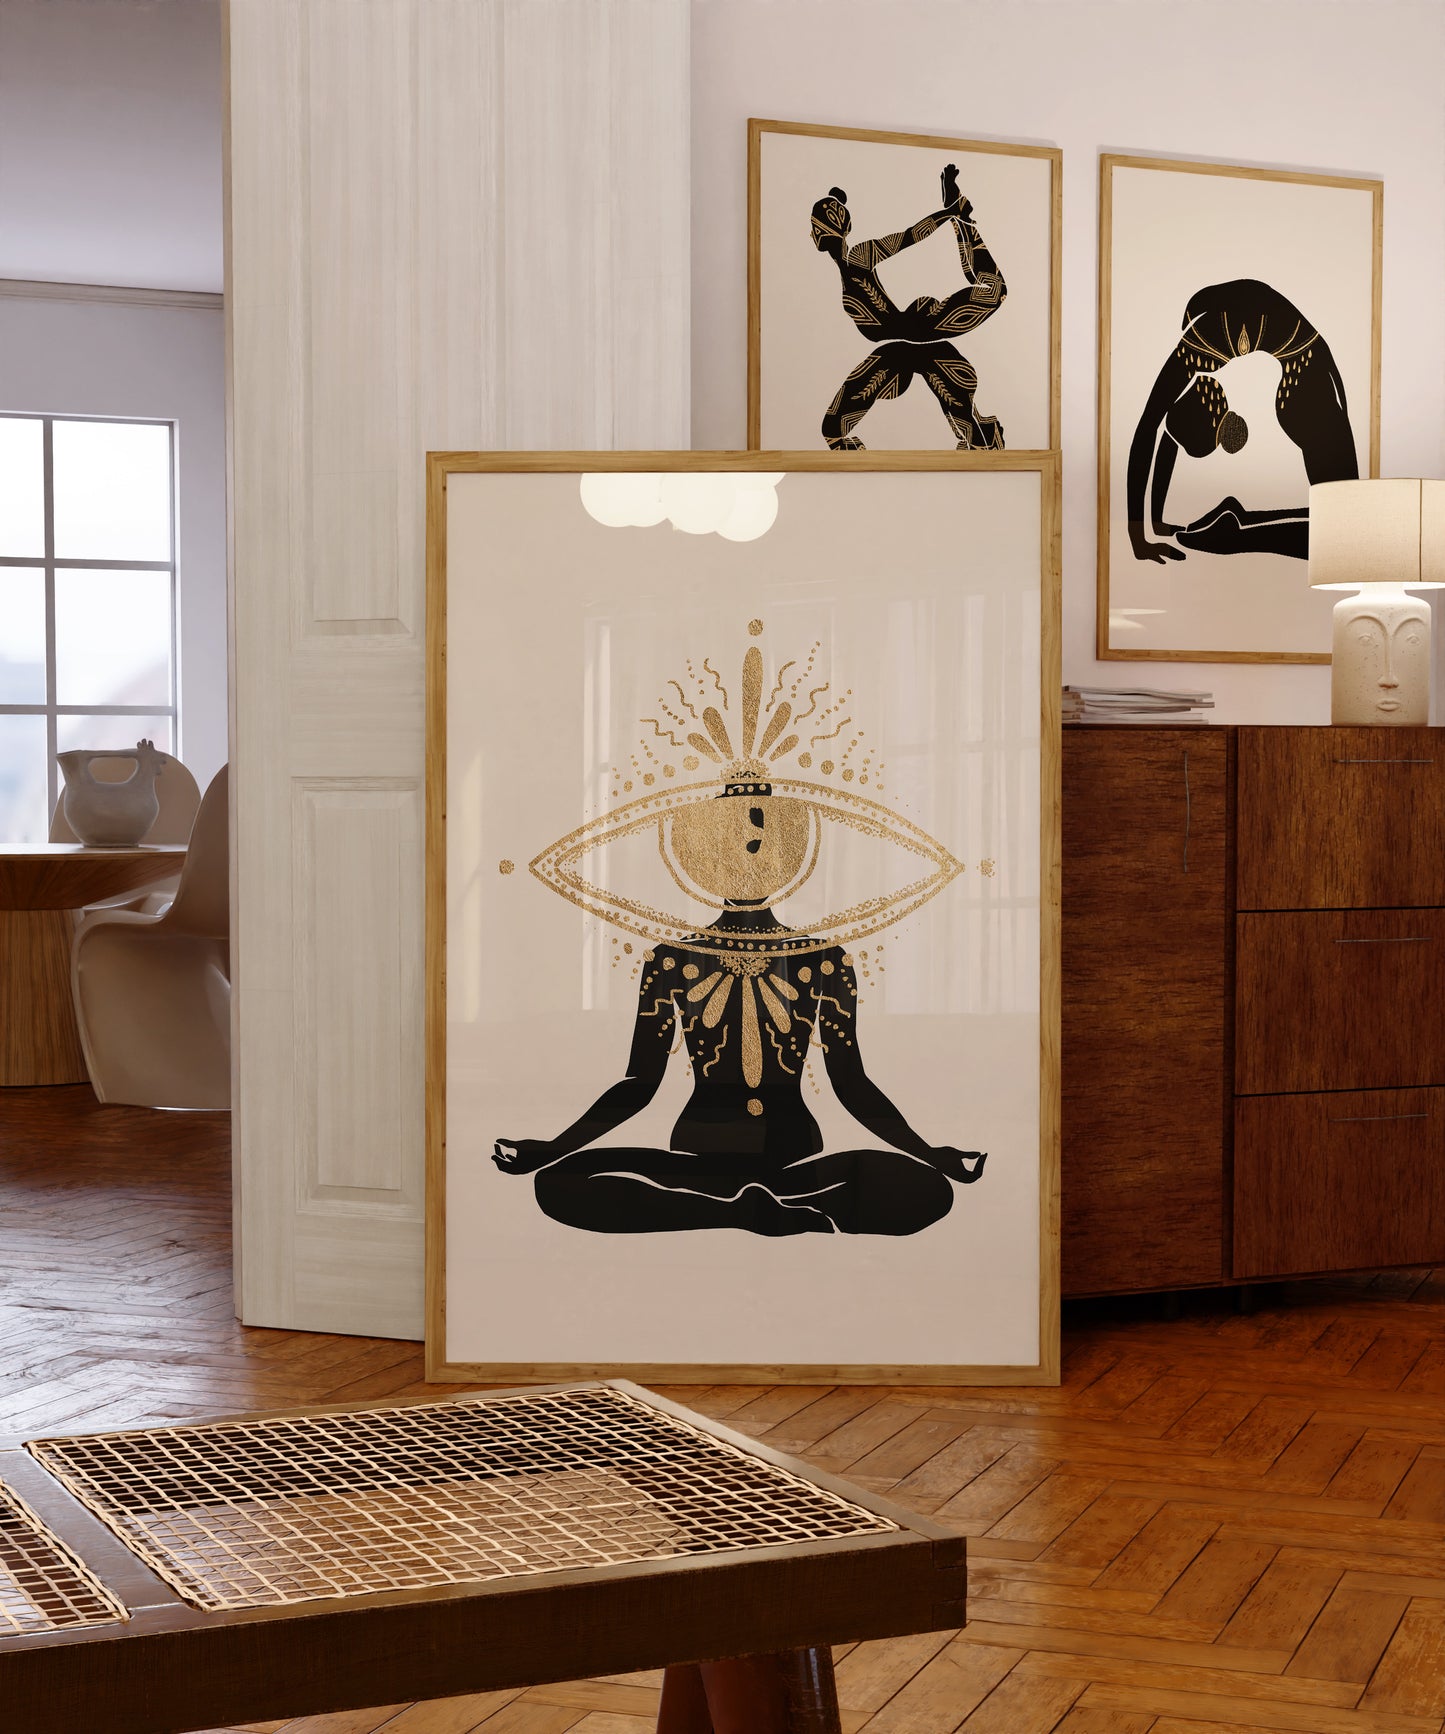 Golden Yoga Goddess Print